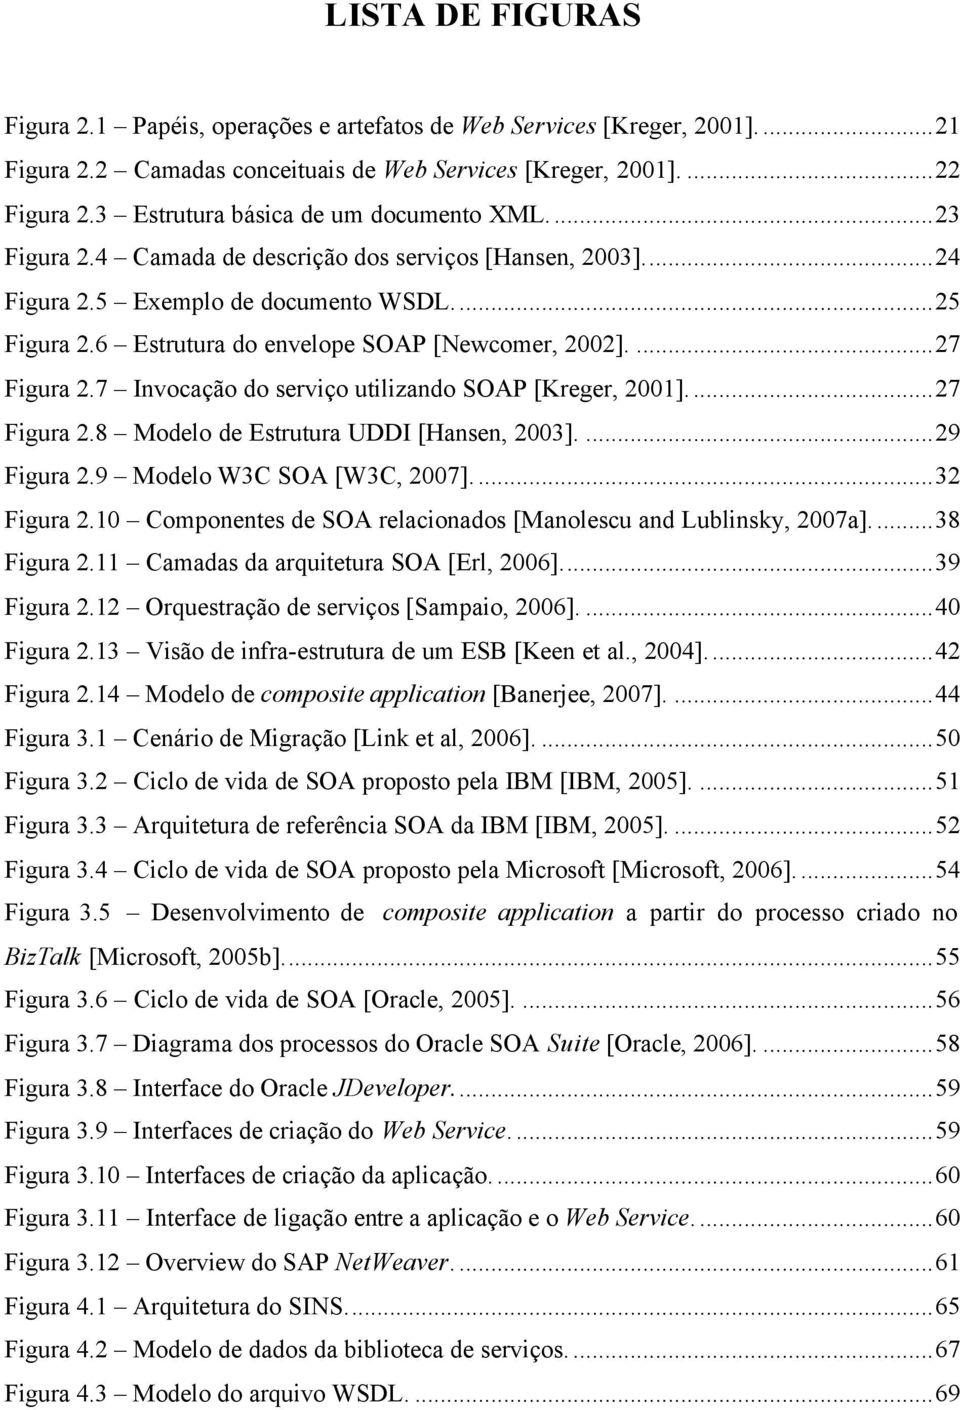 6 Estrutura do envelope SOAP [Newcomer, 2002]....27 Figura 2.7 Invocação do serviço utilizando SOAP [Kreger, 2001]...27 Figura 2.8 Modelo de Estrutura UDDI [Hansen, 2003]....29 Figura 2.